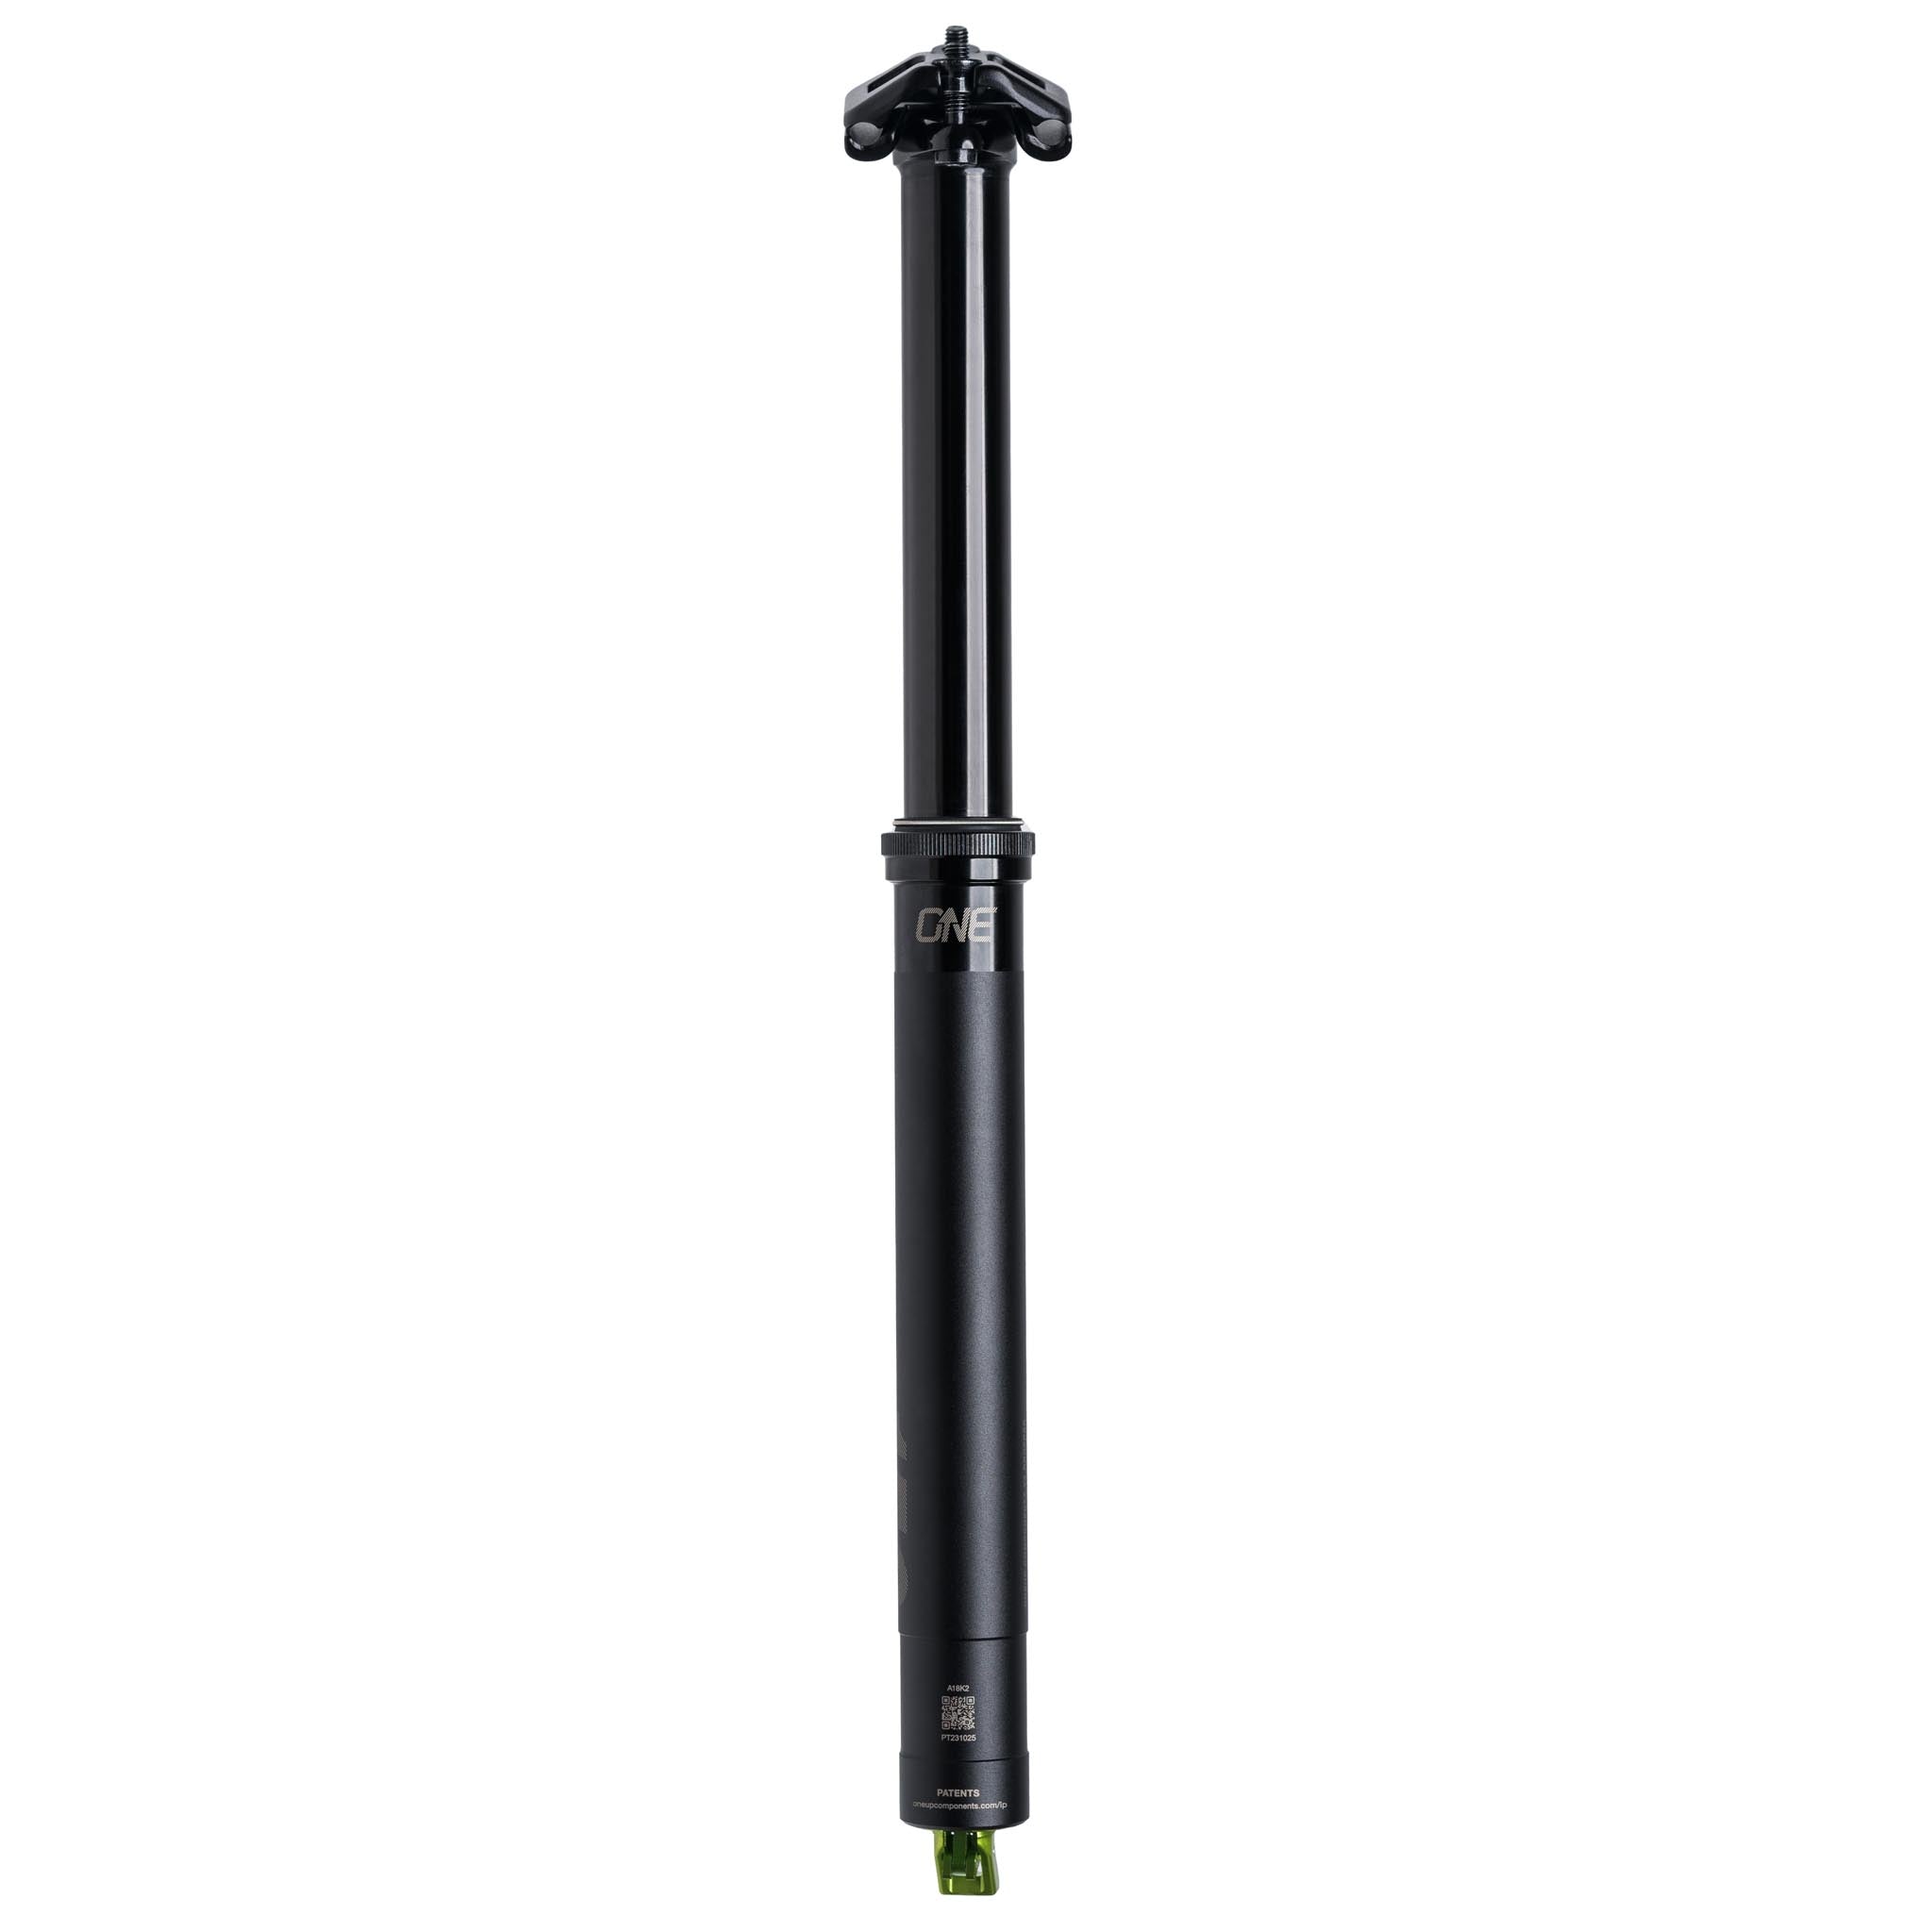 OneUp Components V3 Dropper Post (120mm) 27.2 x 340mm